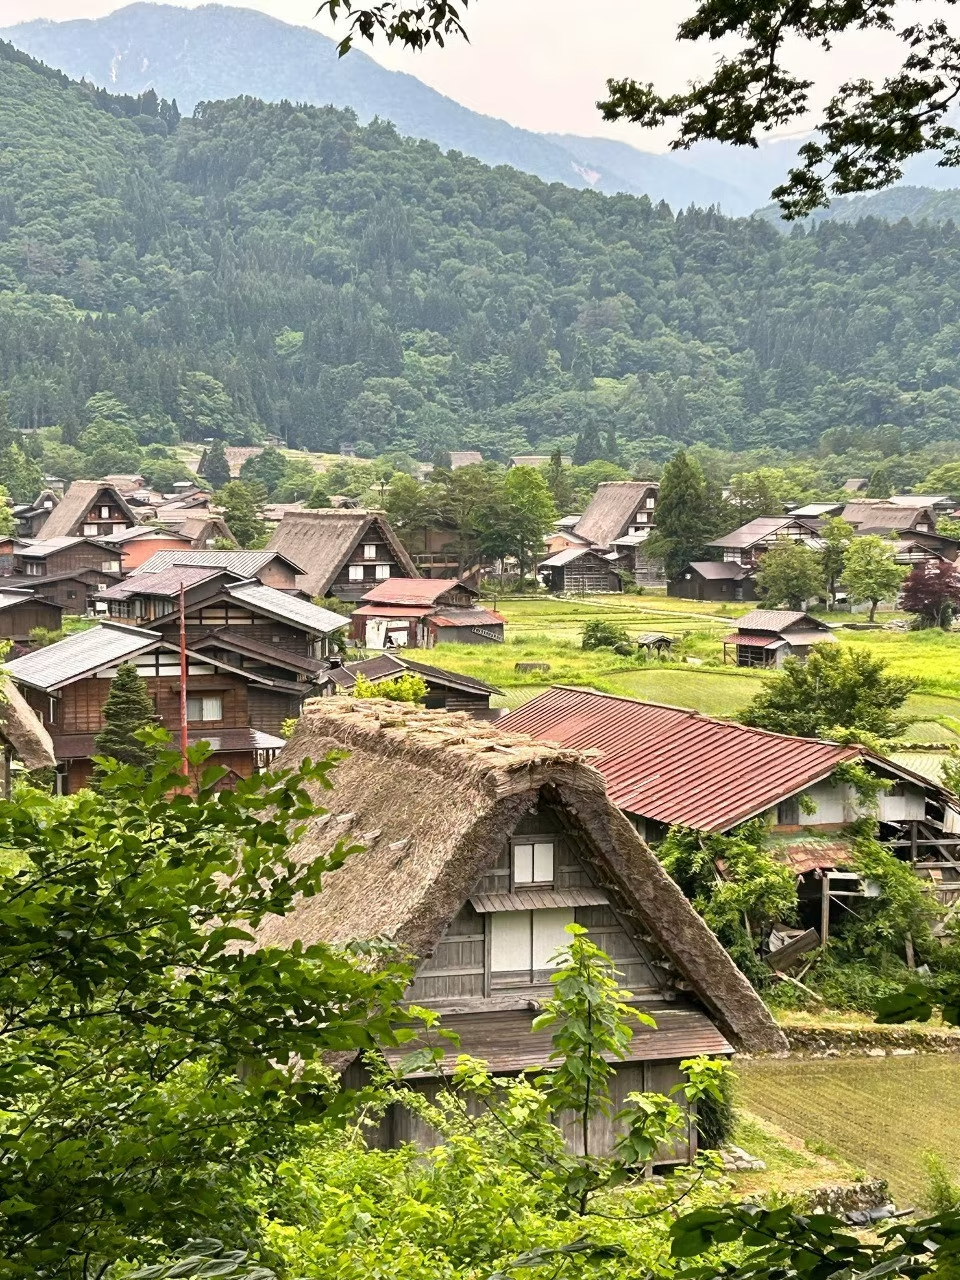 Tiểu sử Khách sạn và đồ ăn lạ ở Nhật Bản: Từ ryokan di sản đến thịt bò Hida